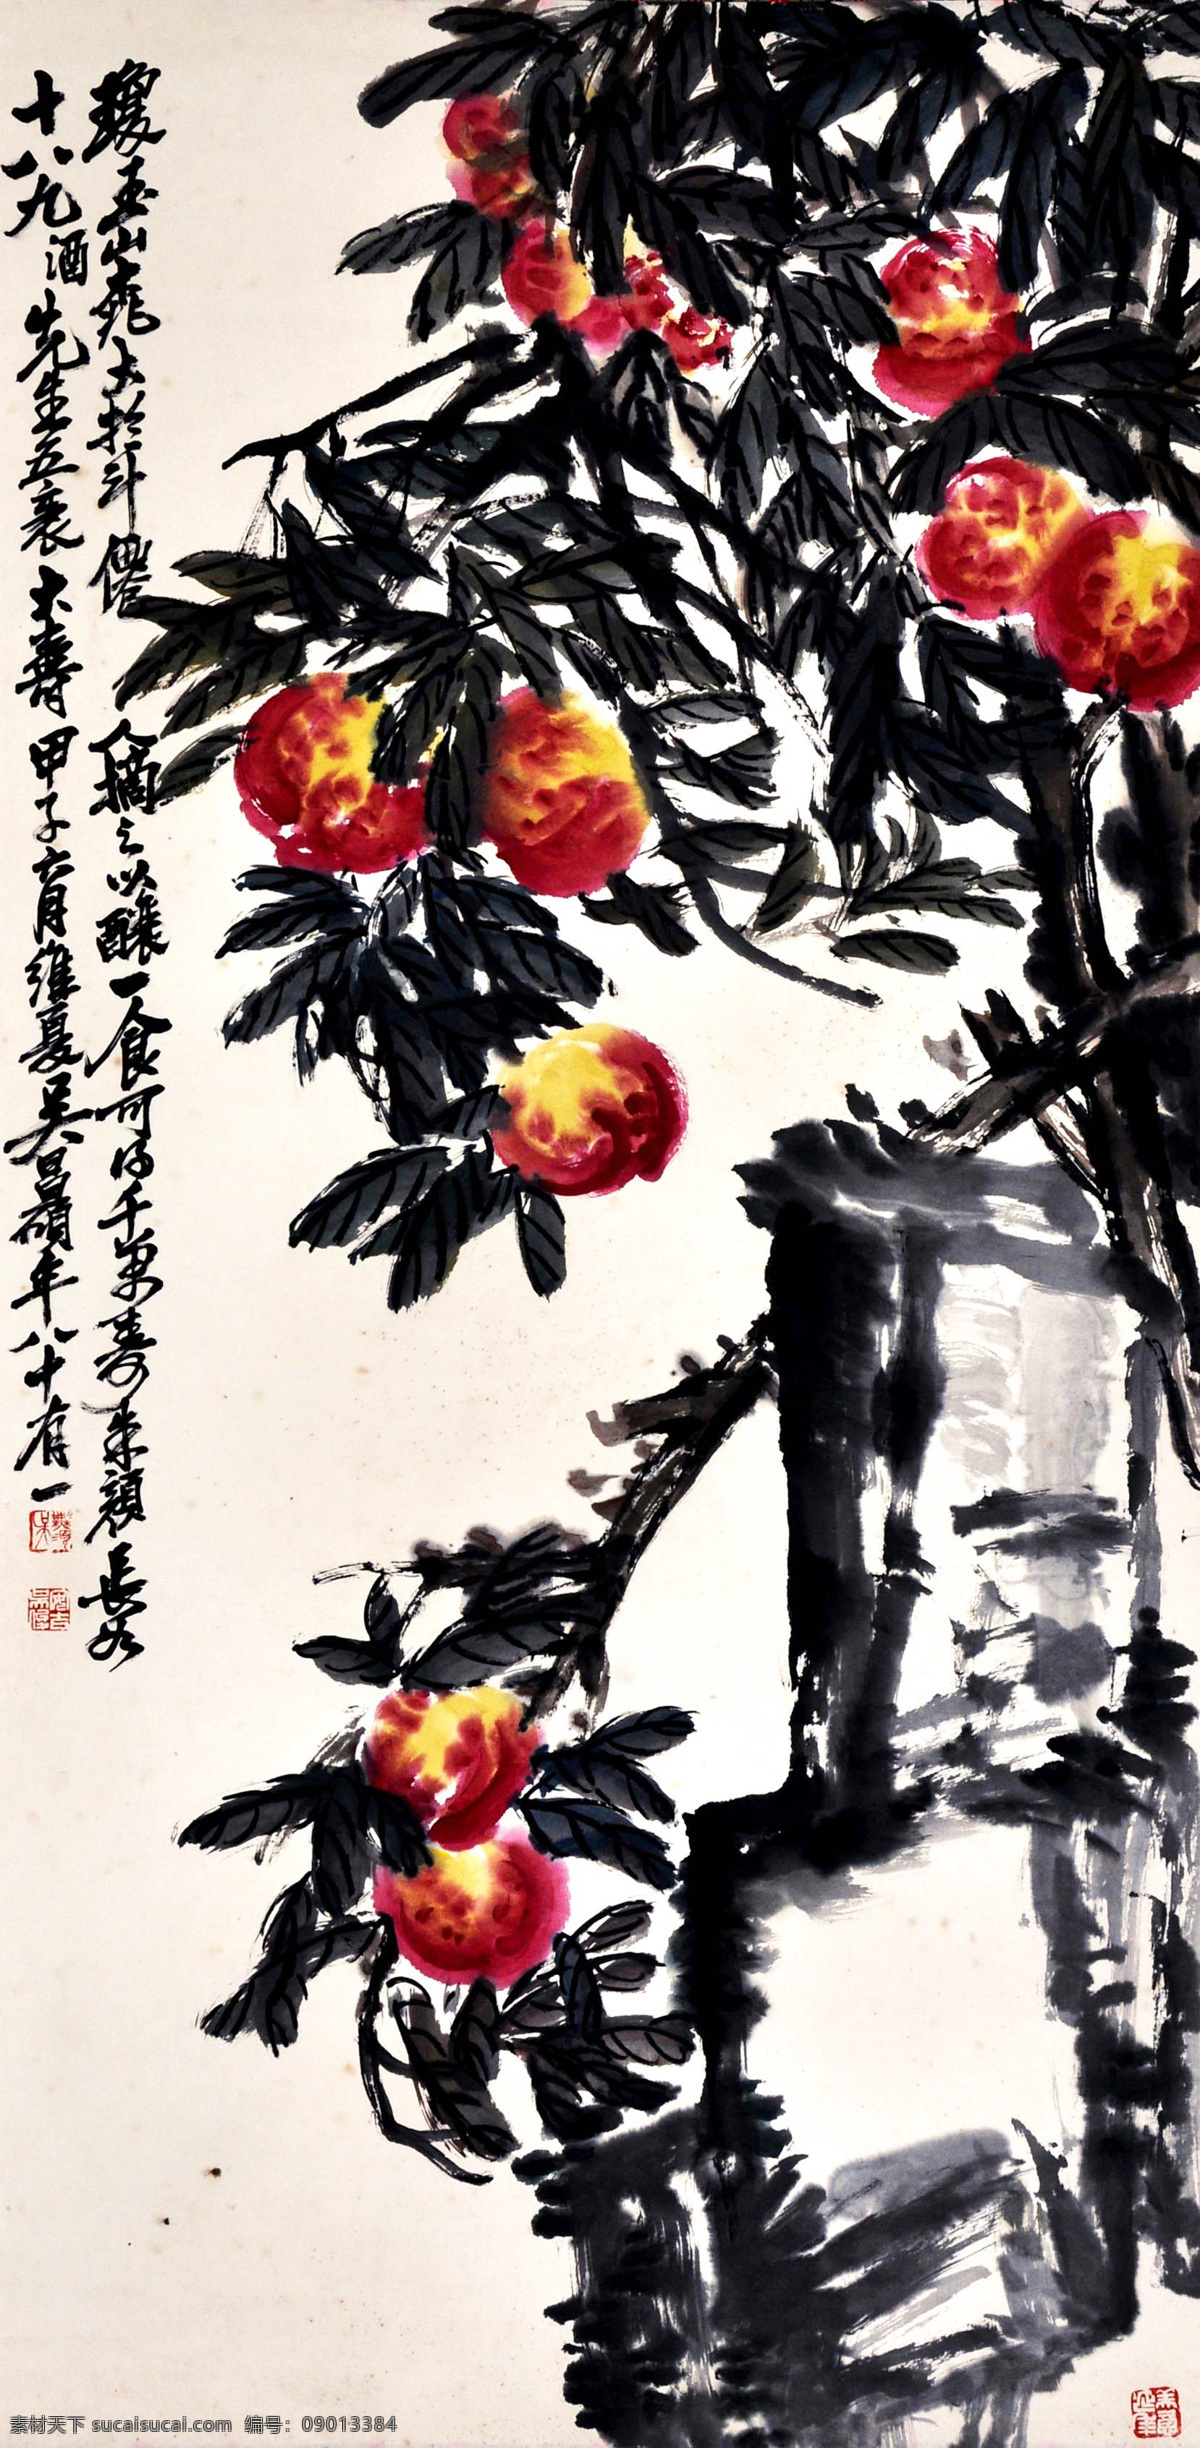 吴昌硕 寿桃 写意 水墨画 国画 中国画 传统画 名家 绘画 艺术 文化艺术 绘画书法